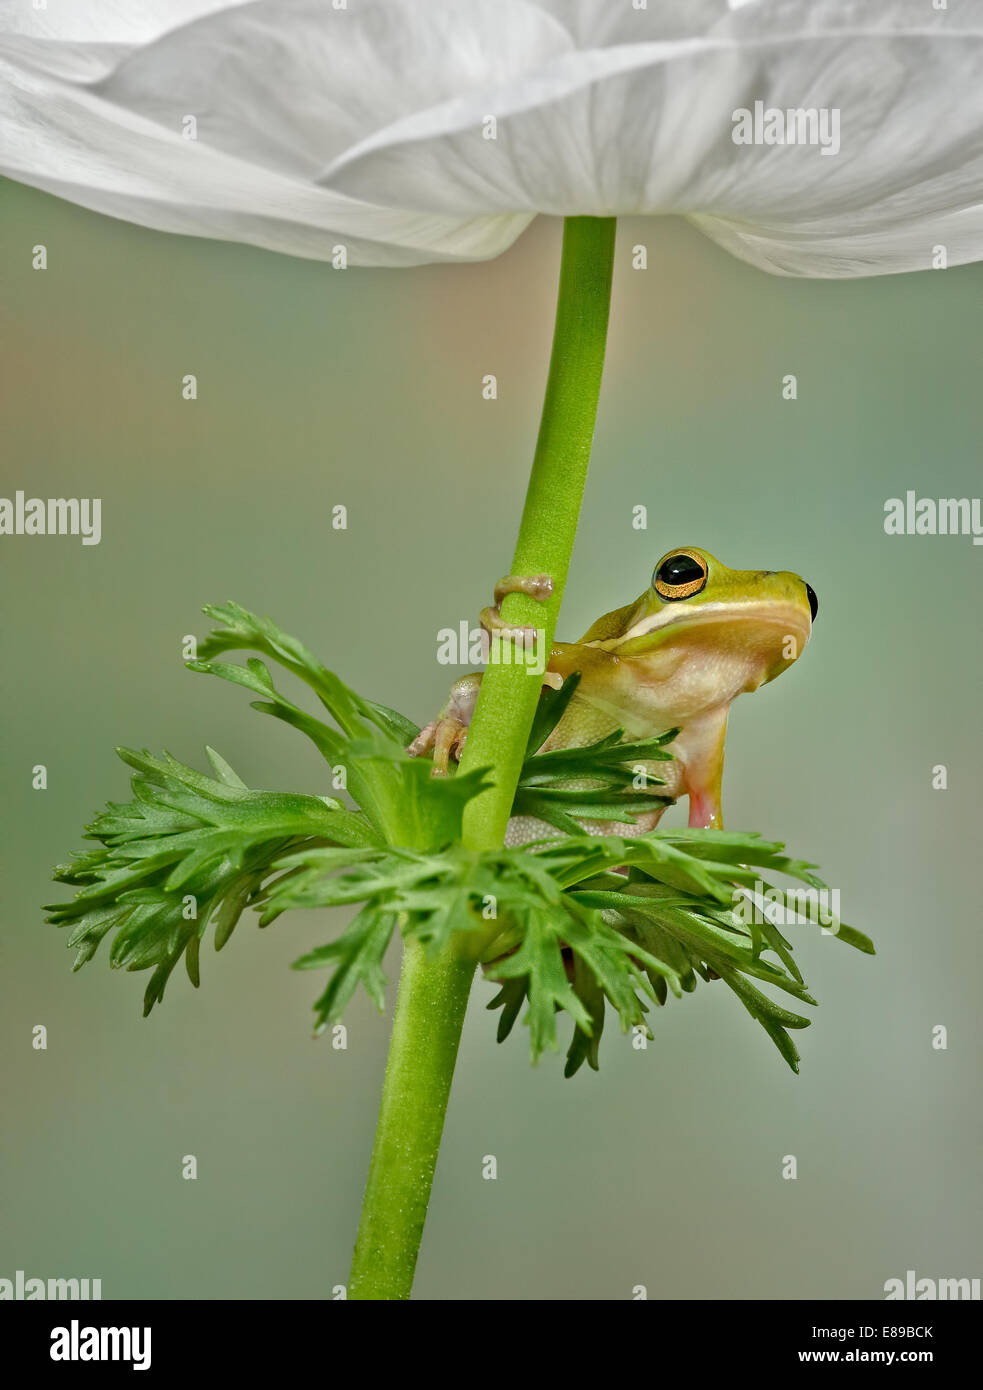 Rainette verte se trouve sur les feuilles ci-dessous une fleur blanche. Les pétales blancs de la fleur un canopy pour cette jolie petite grenouille. Banque D'Images